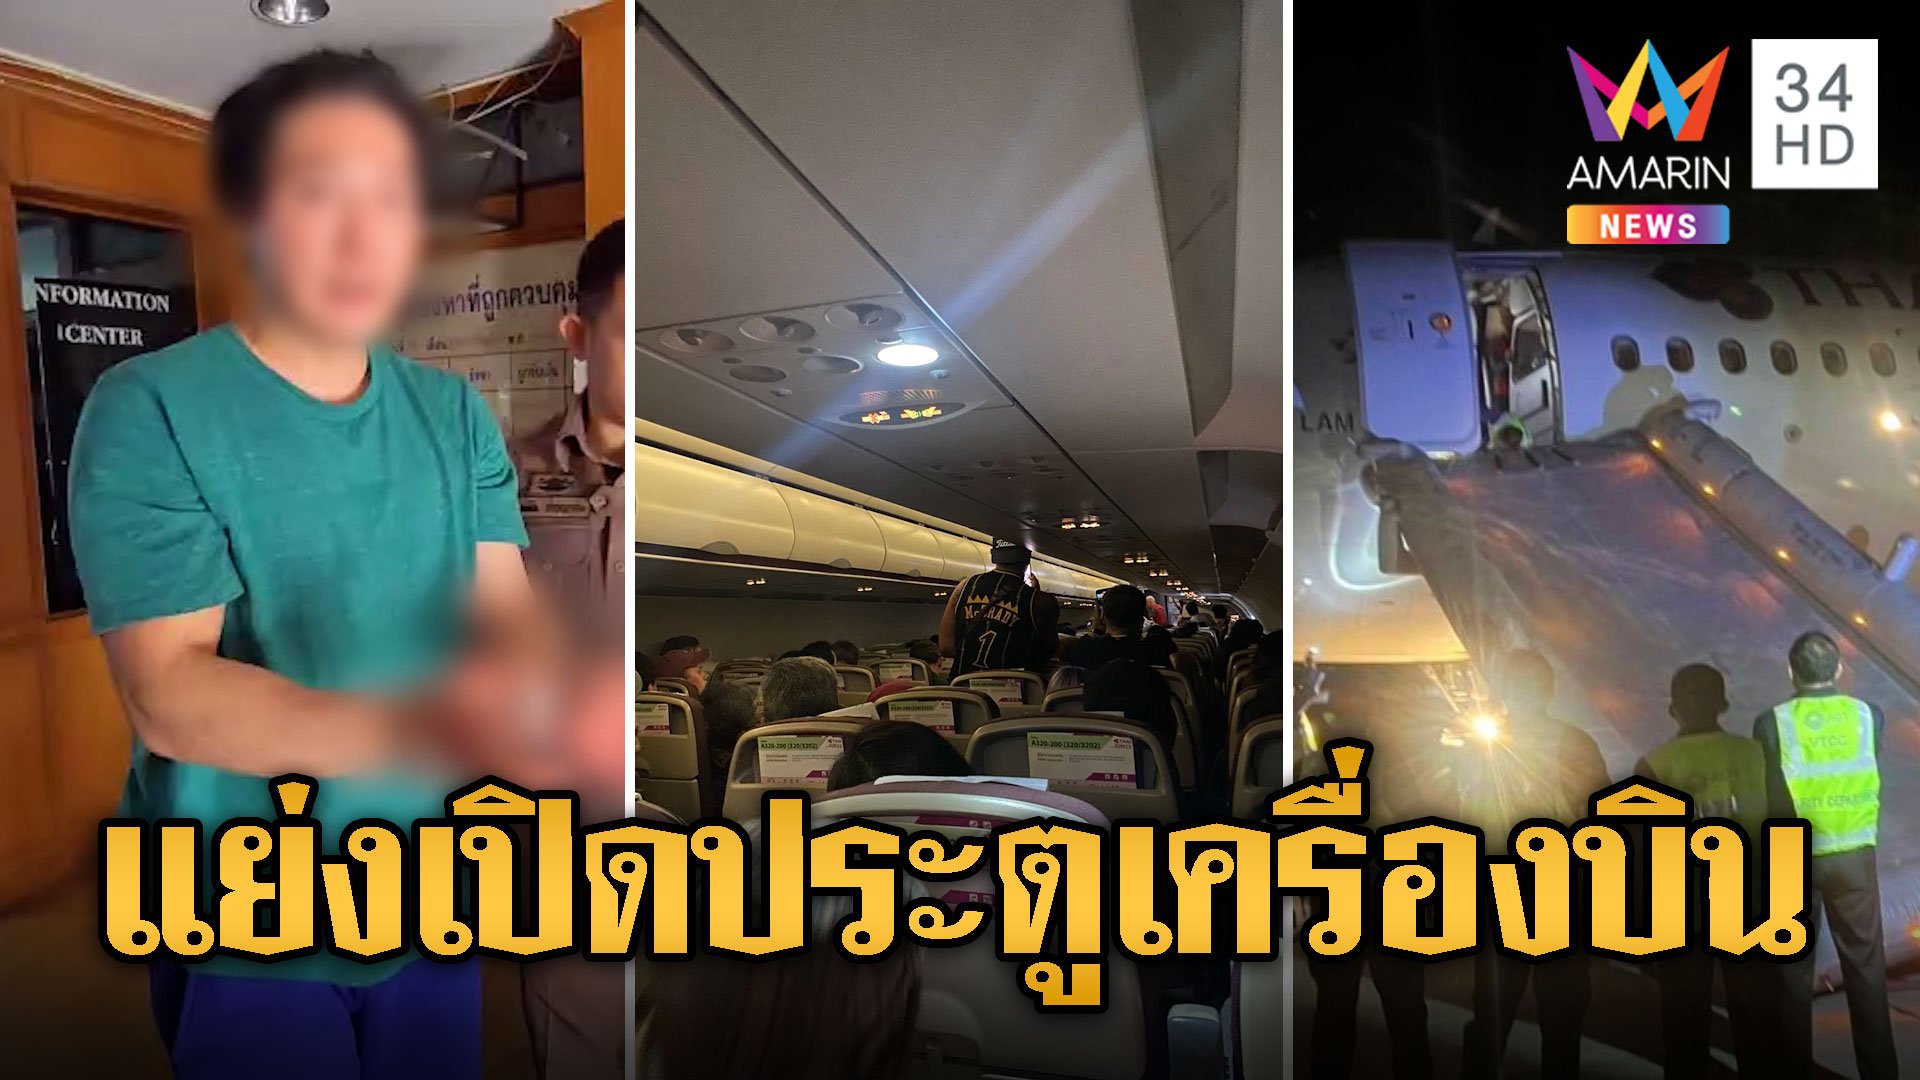 สนามบินวุ่น! ผู้โดยสารแพนิค แย่งเปิดประตูเครื่องบิน | ข่าวเที่ยงอมรินทร์ | 8 ก.พ. 67 | AMARIN TVHD34